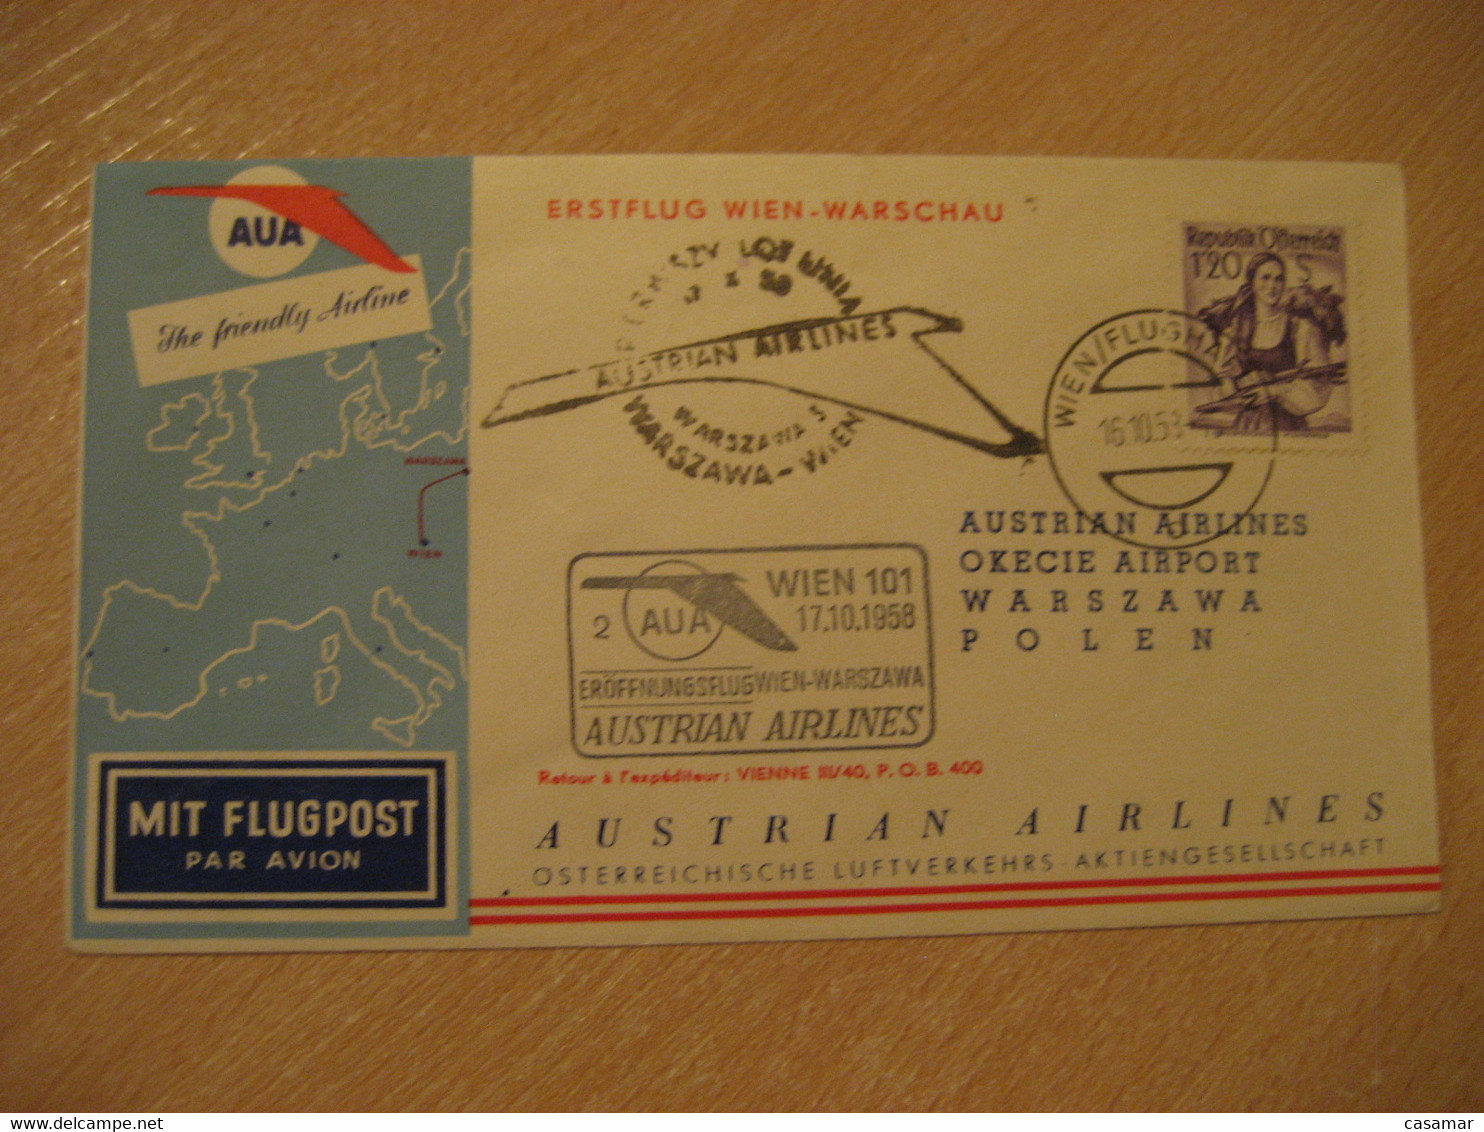 WARSZAWA Warsaw Wien 1958 AUA Austrian Airlines Airline First Flight Cancel Cover POLAND AUSTRIA - Aviones